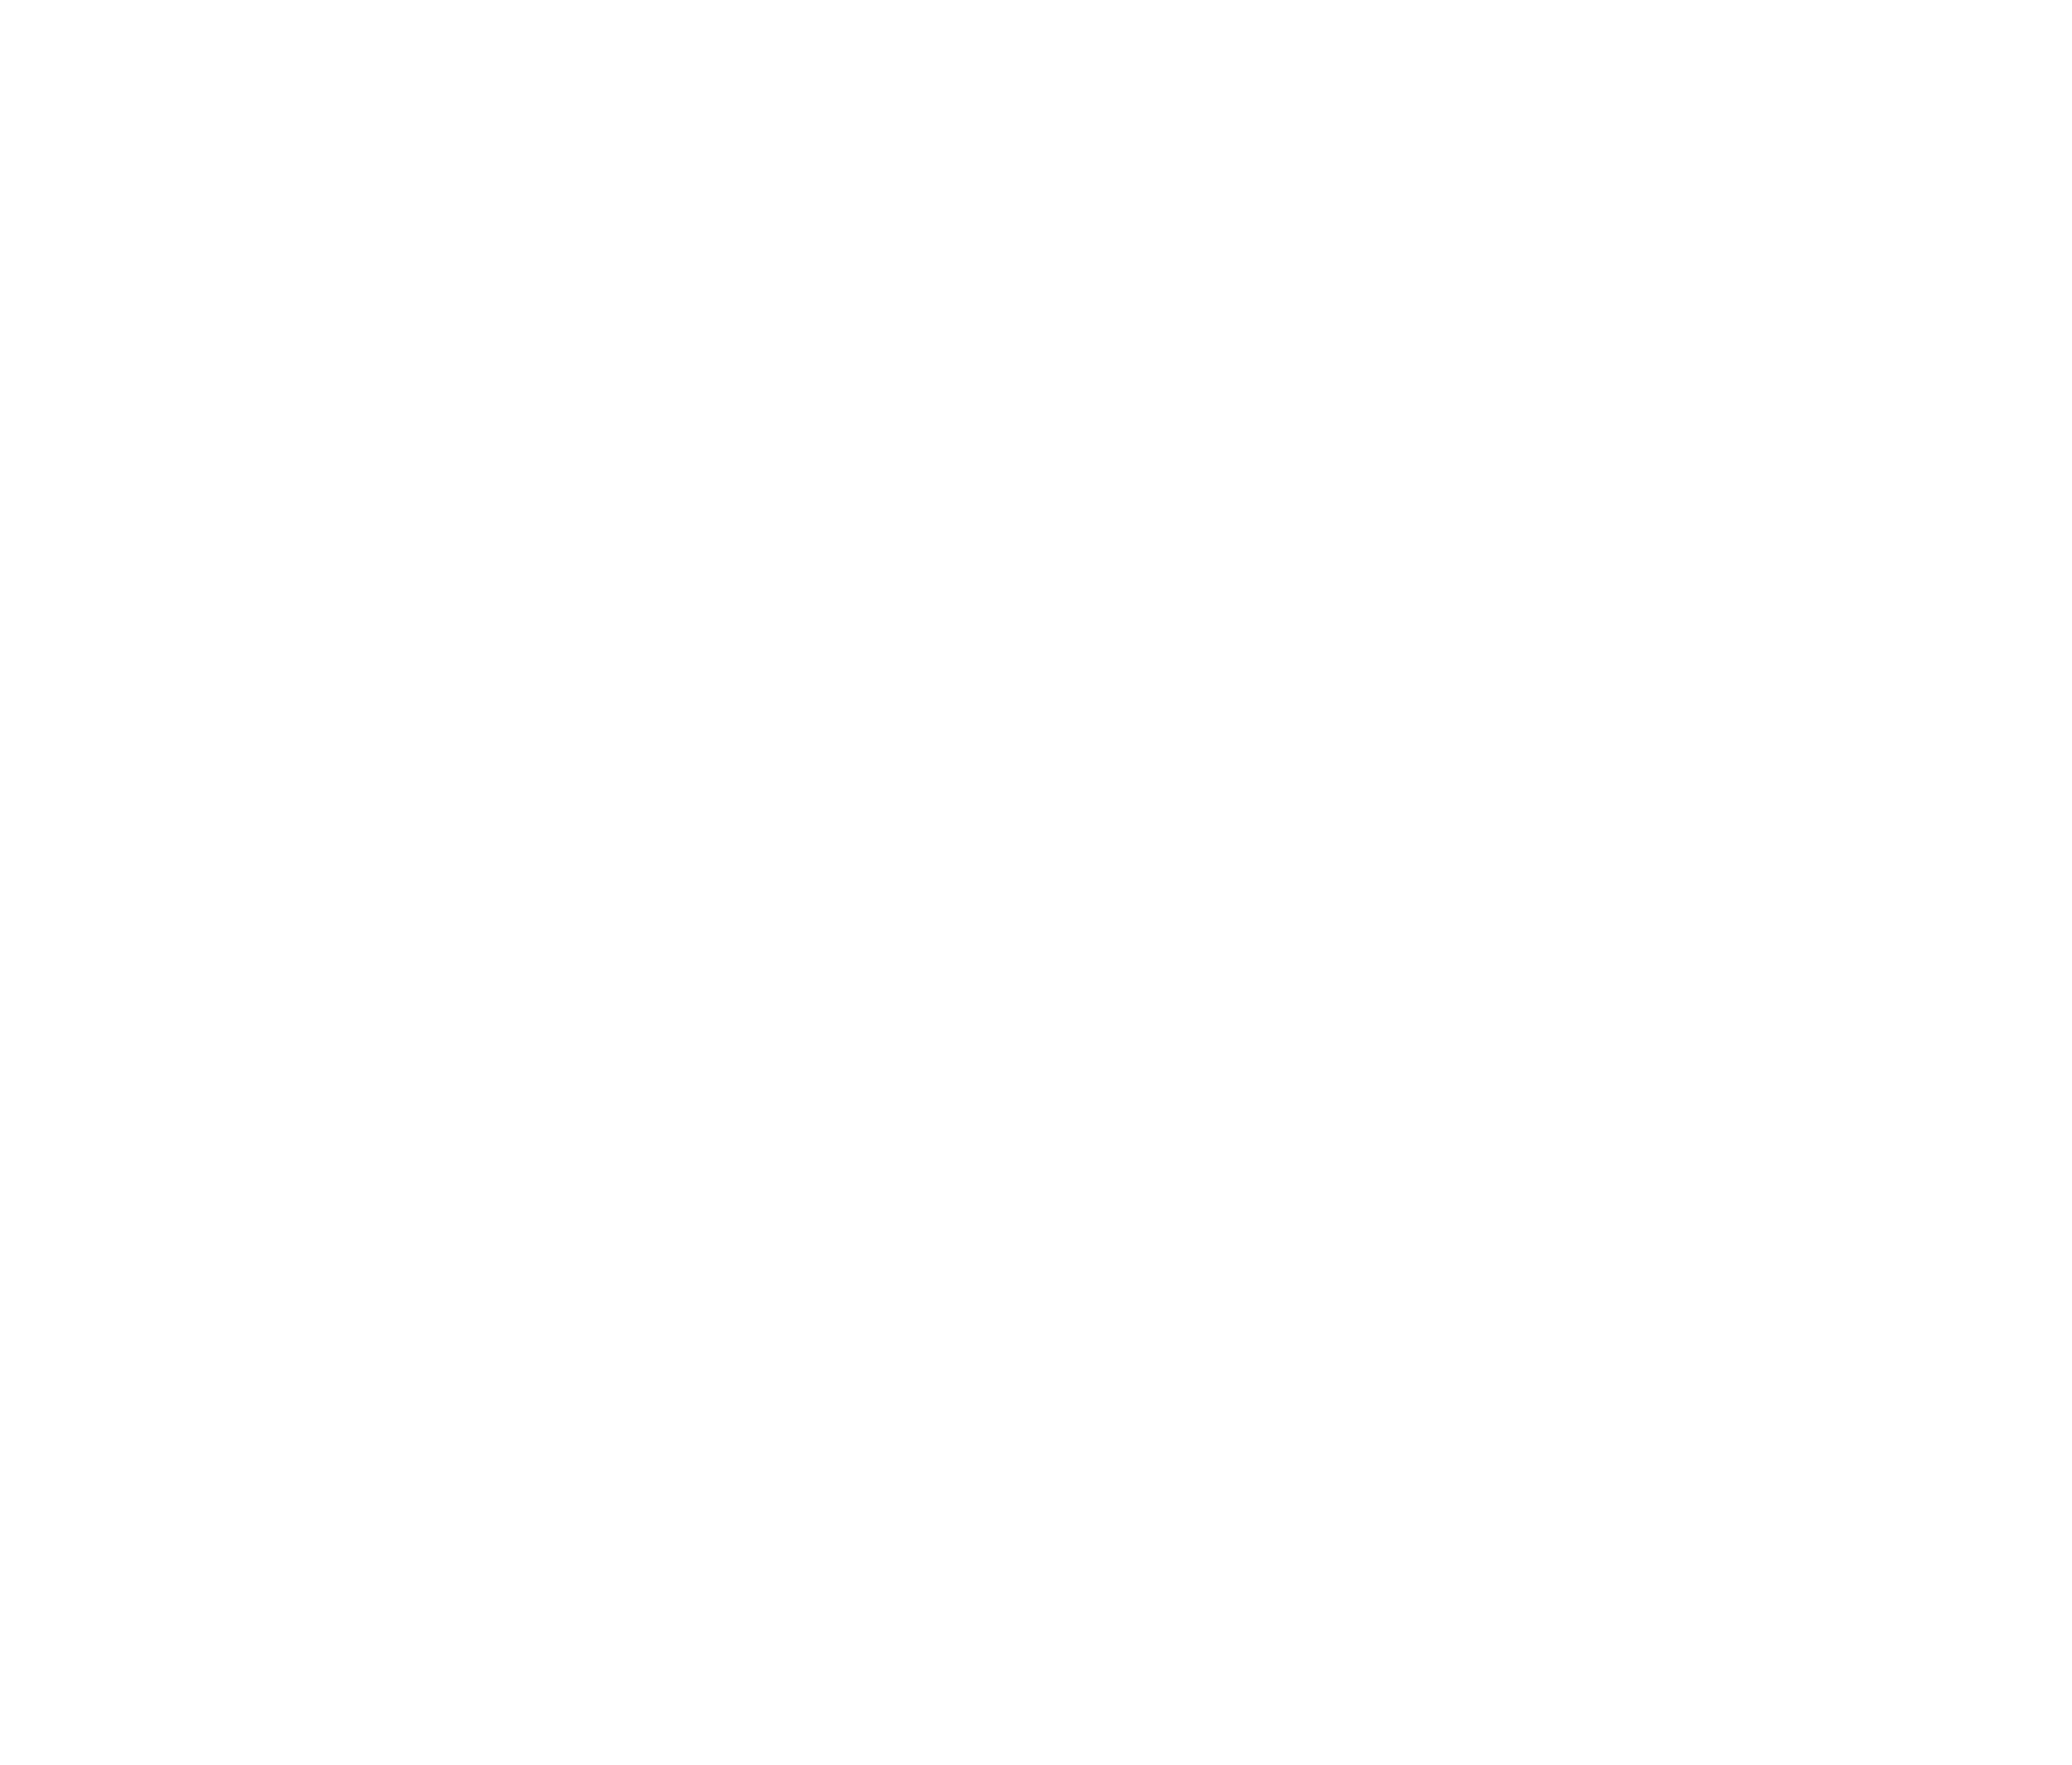 RIVERSIDE COUNTY FIRE